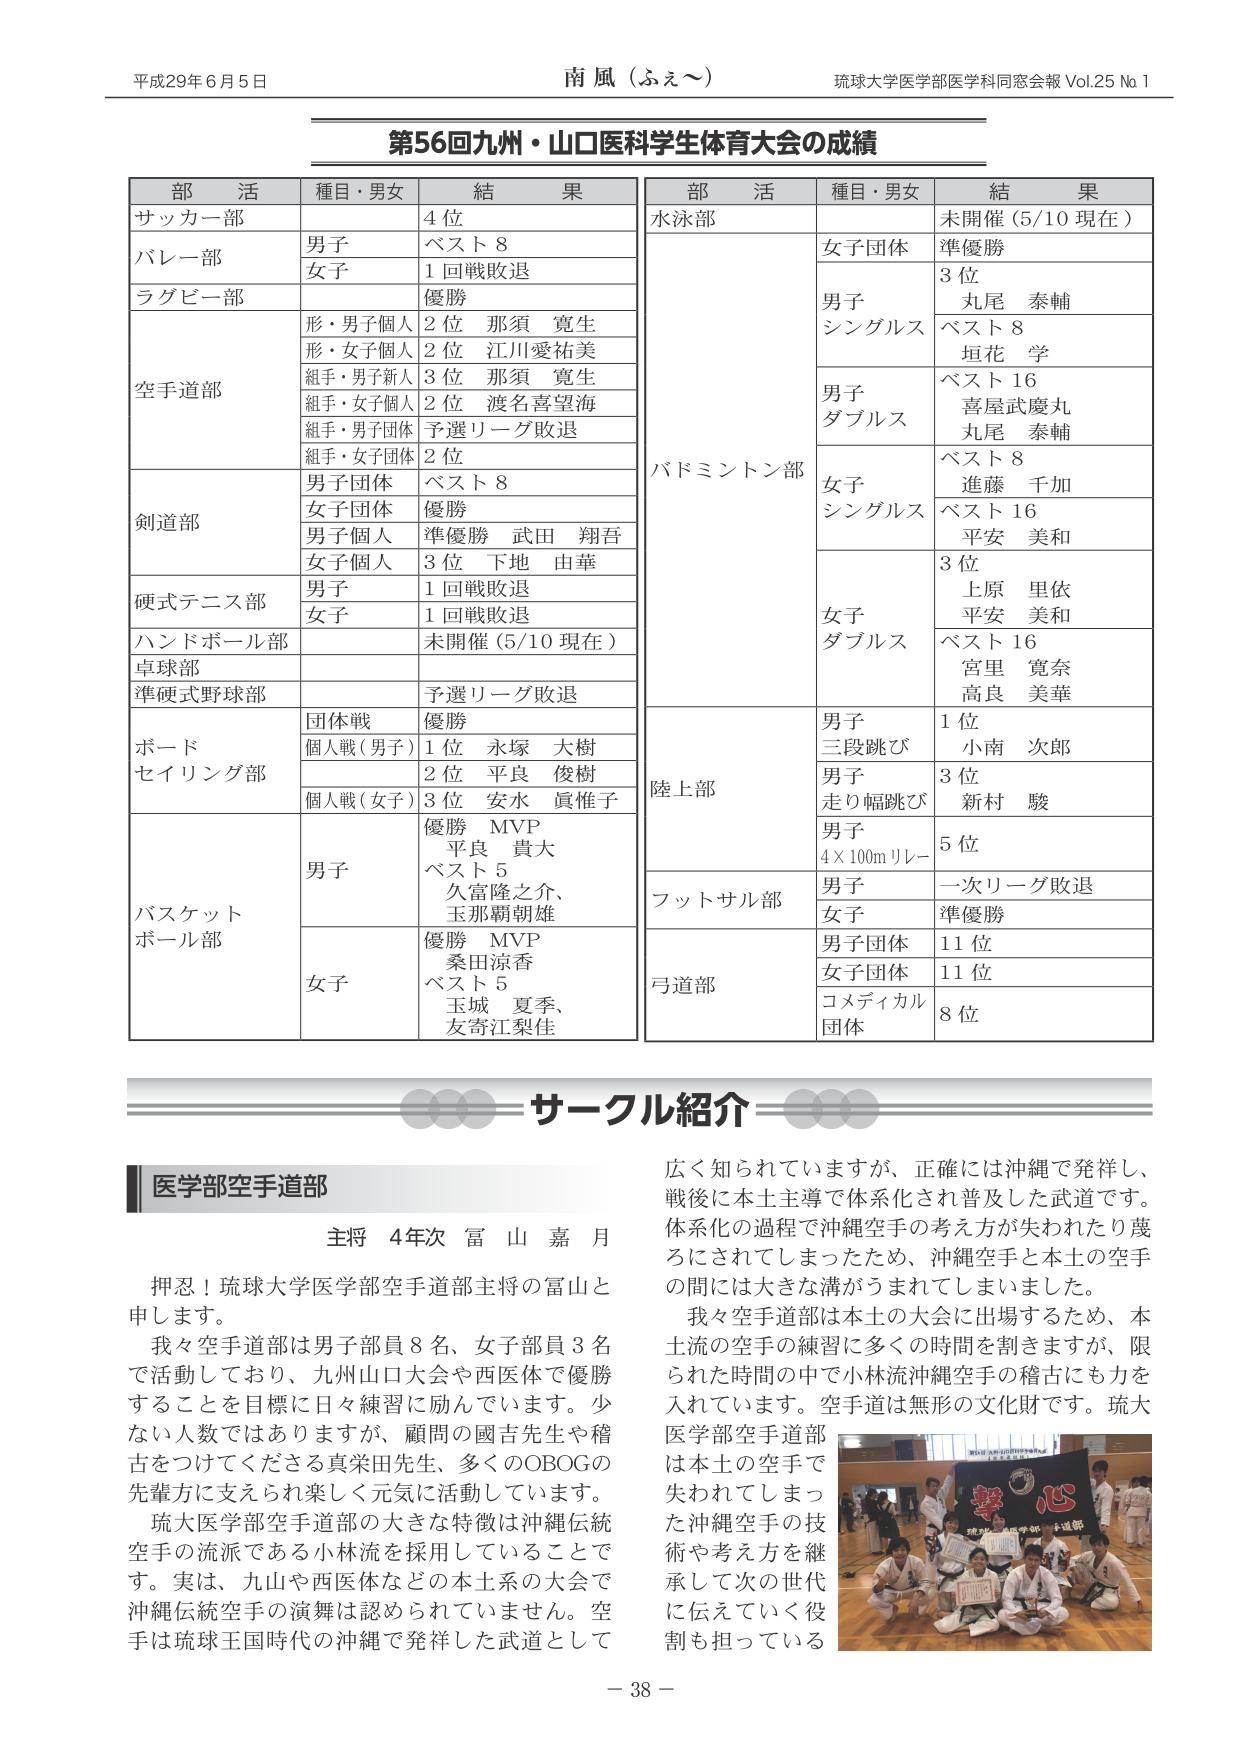 第56回九州・山口医科学生体育大会の成績&サークル紹介(1)